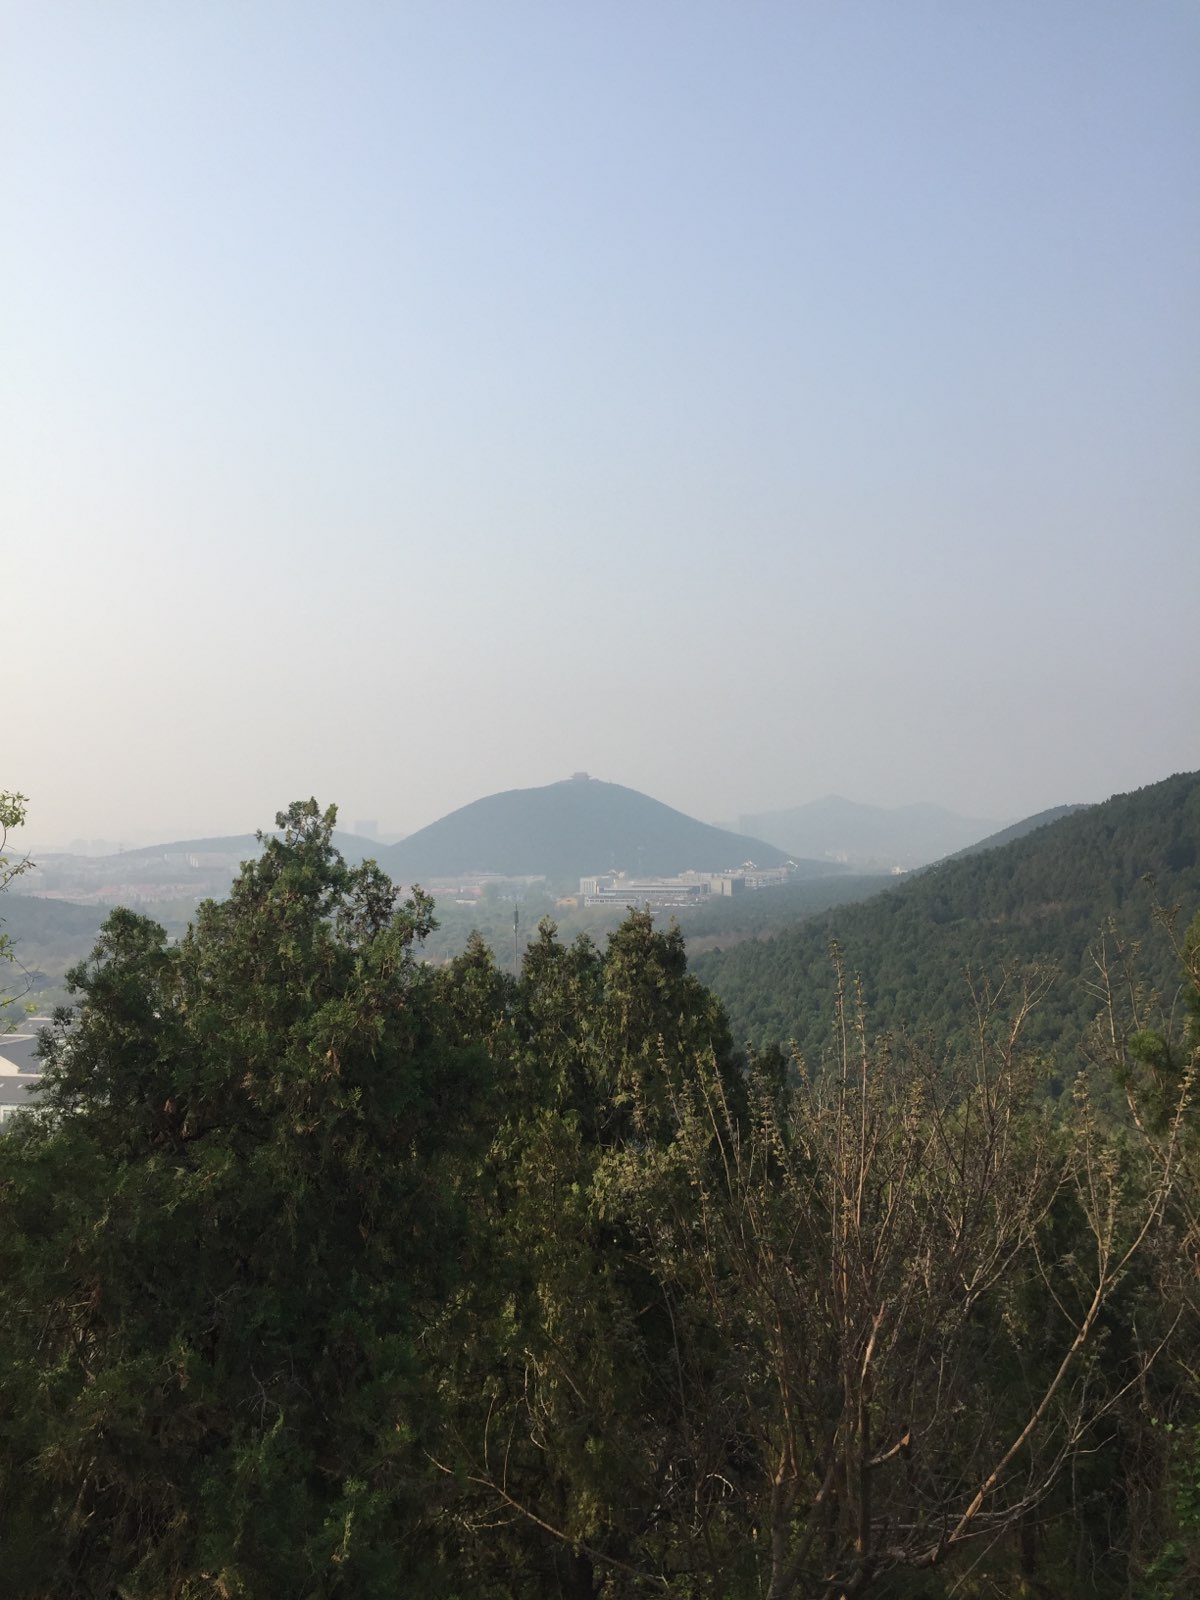 从山上可以俯瞰徐州全景 很漂亮 山也不是很高 爬山不累 景色很美